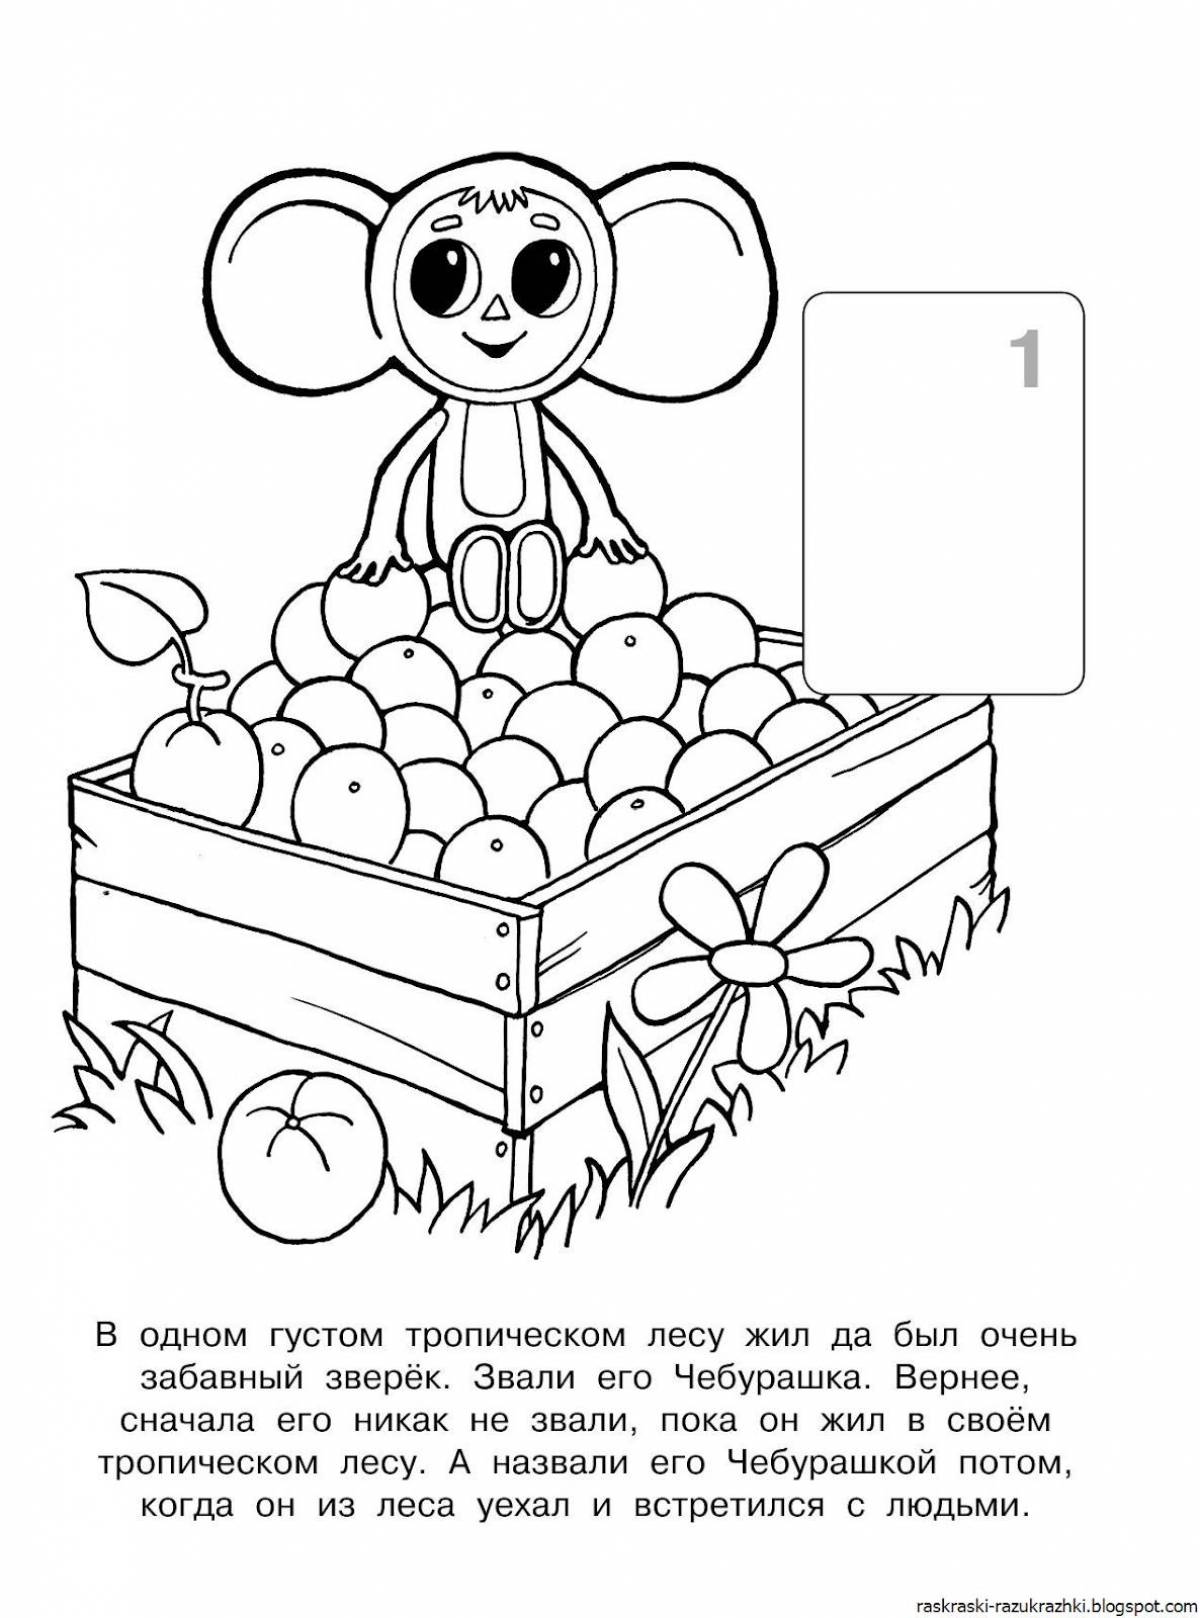 Cheburashka for kids #4